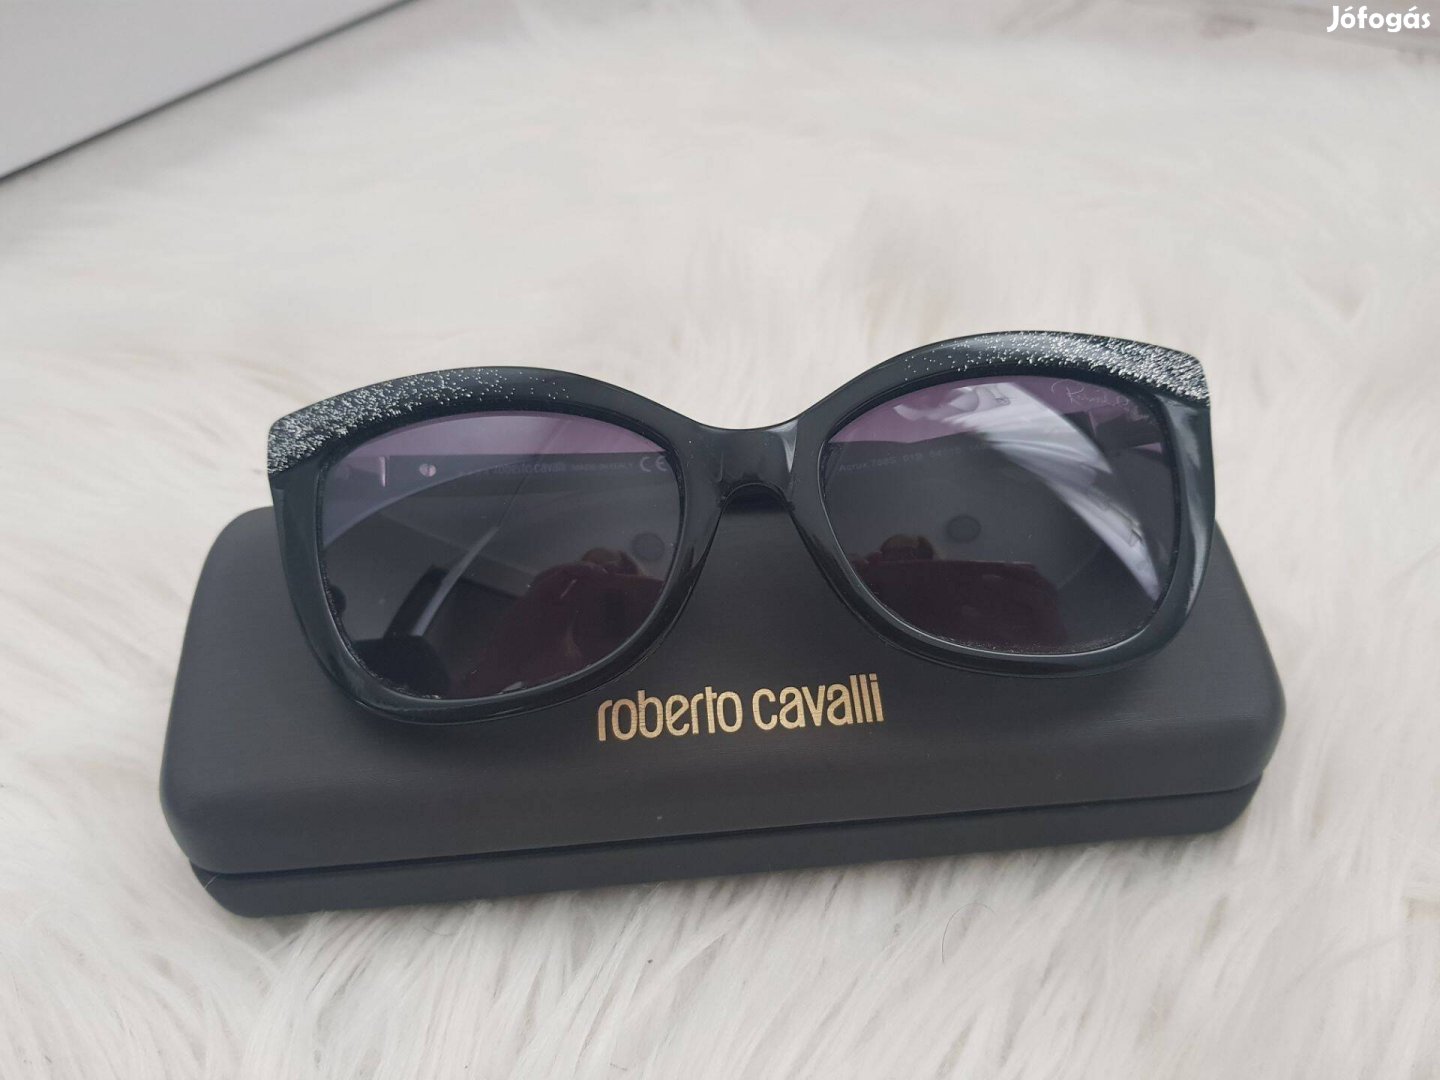 Roberto Cavalli napszemüveg